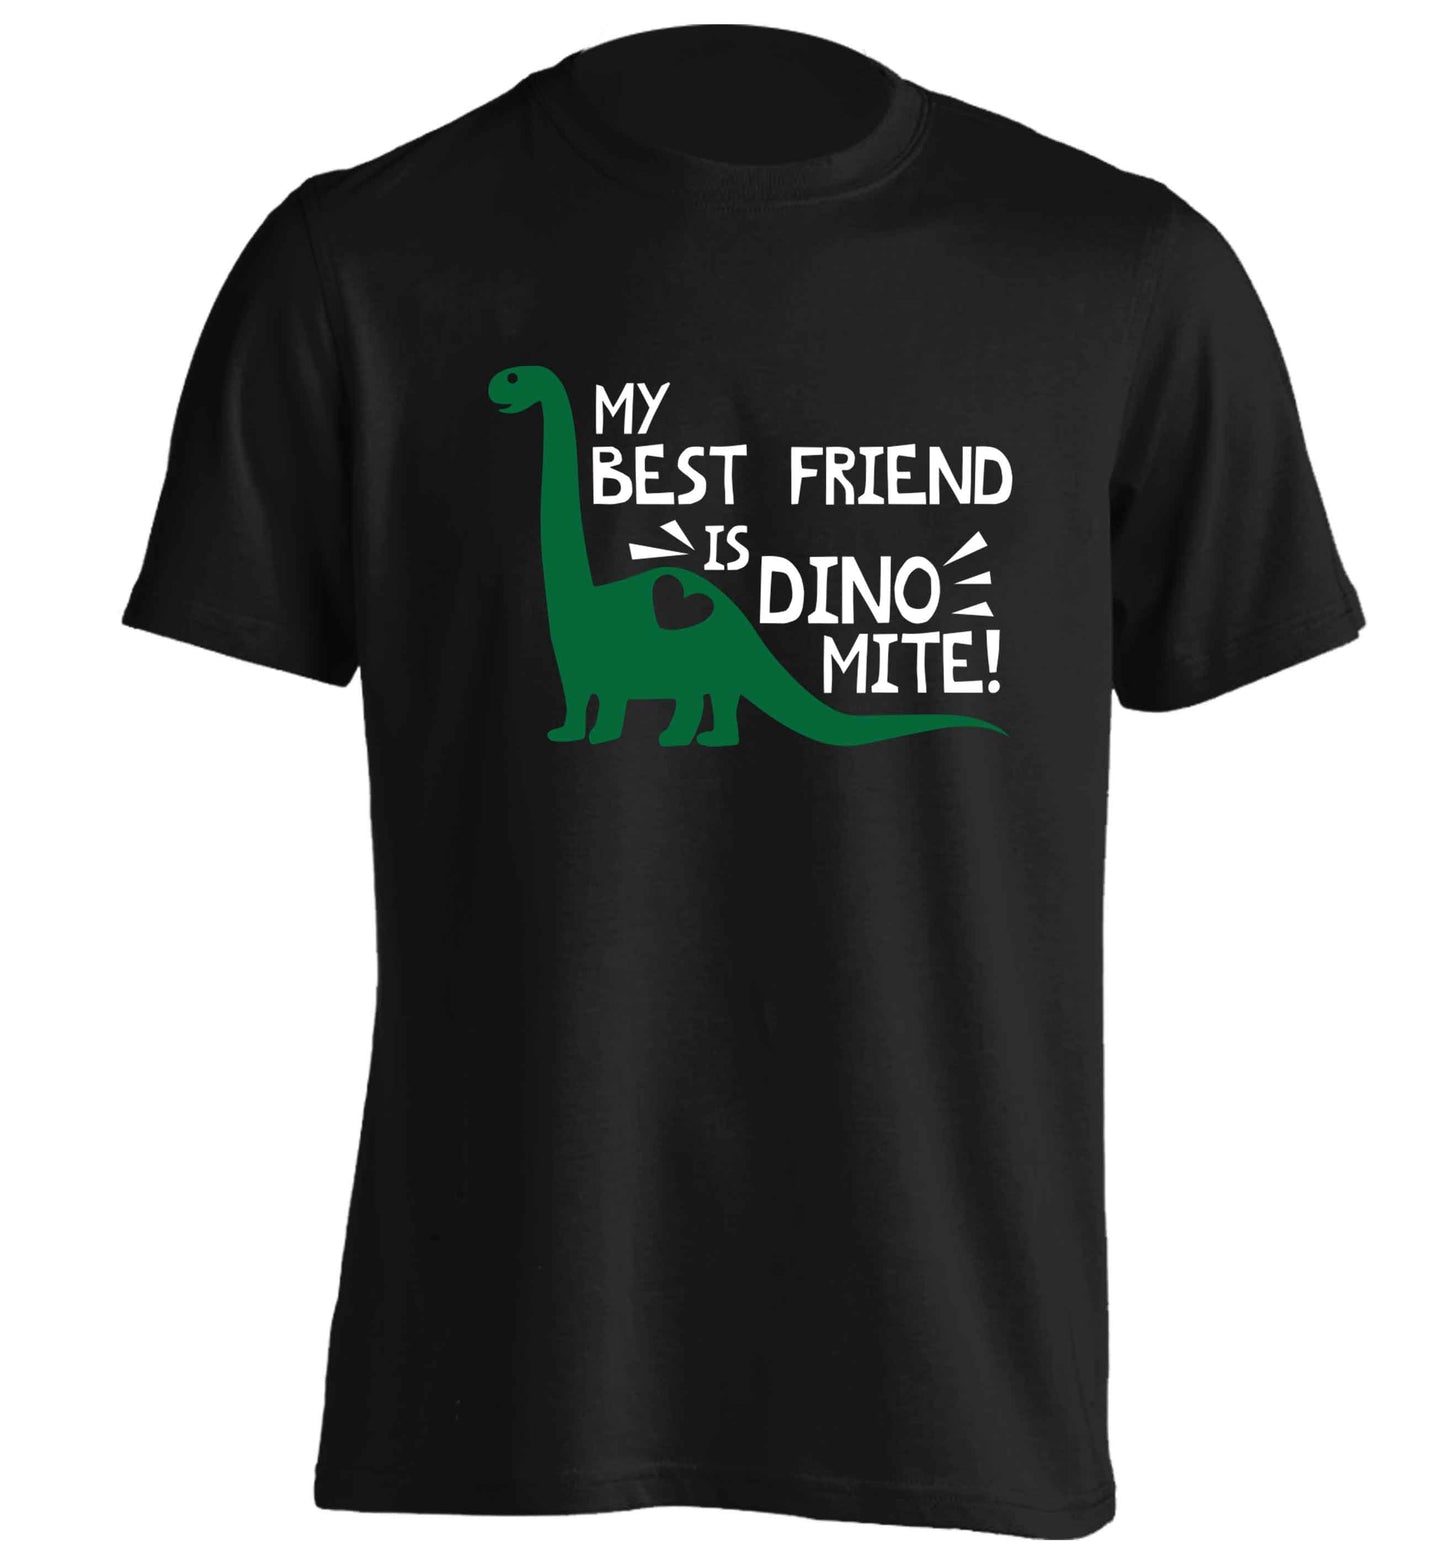 My best friend is dinomite! adults unisex black Tshirt 2XL